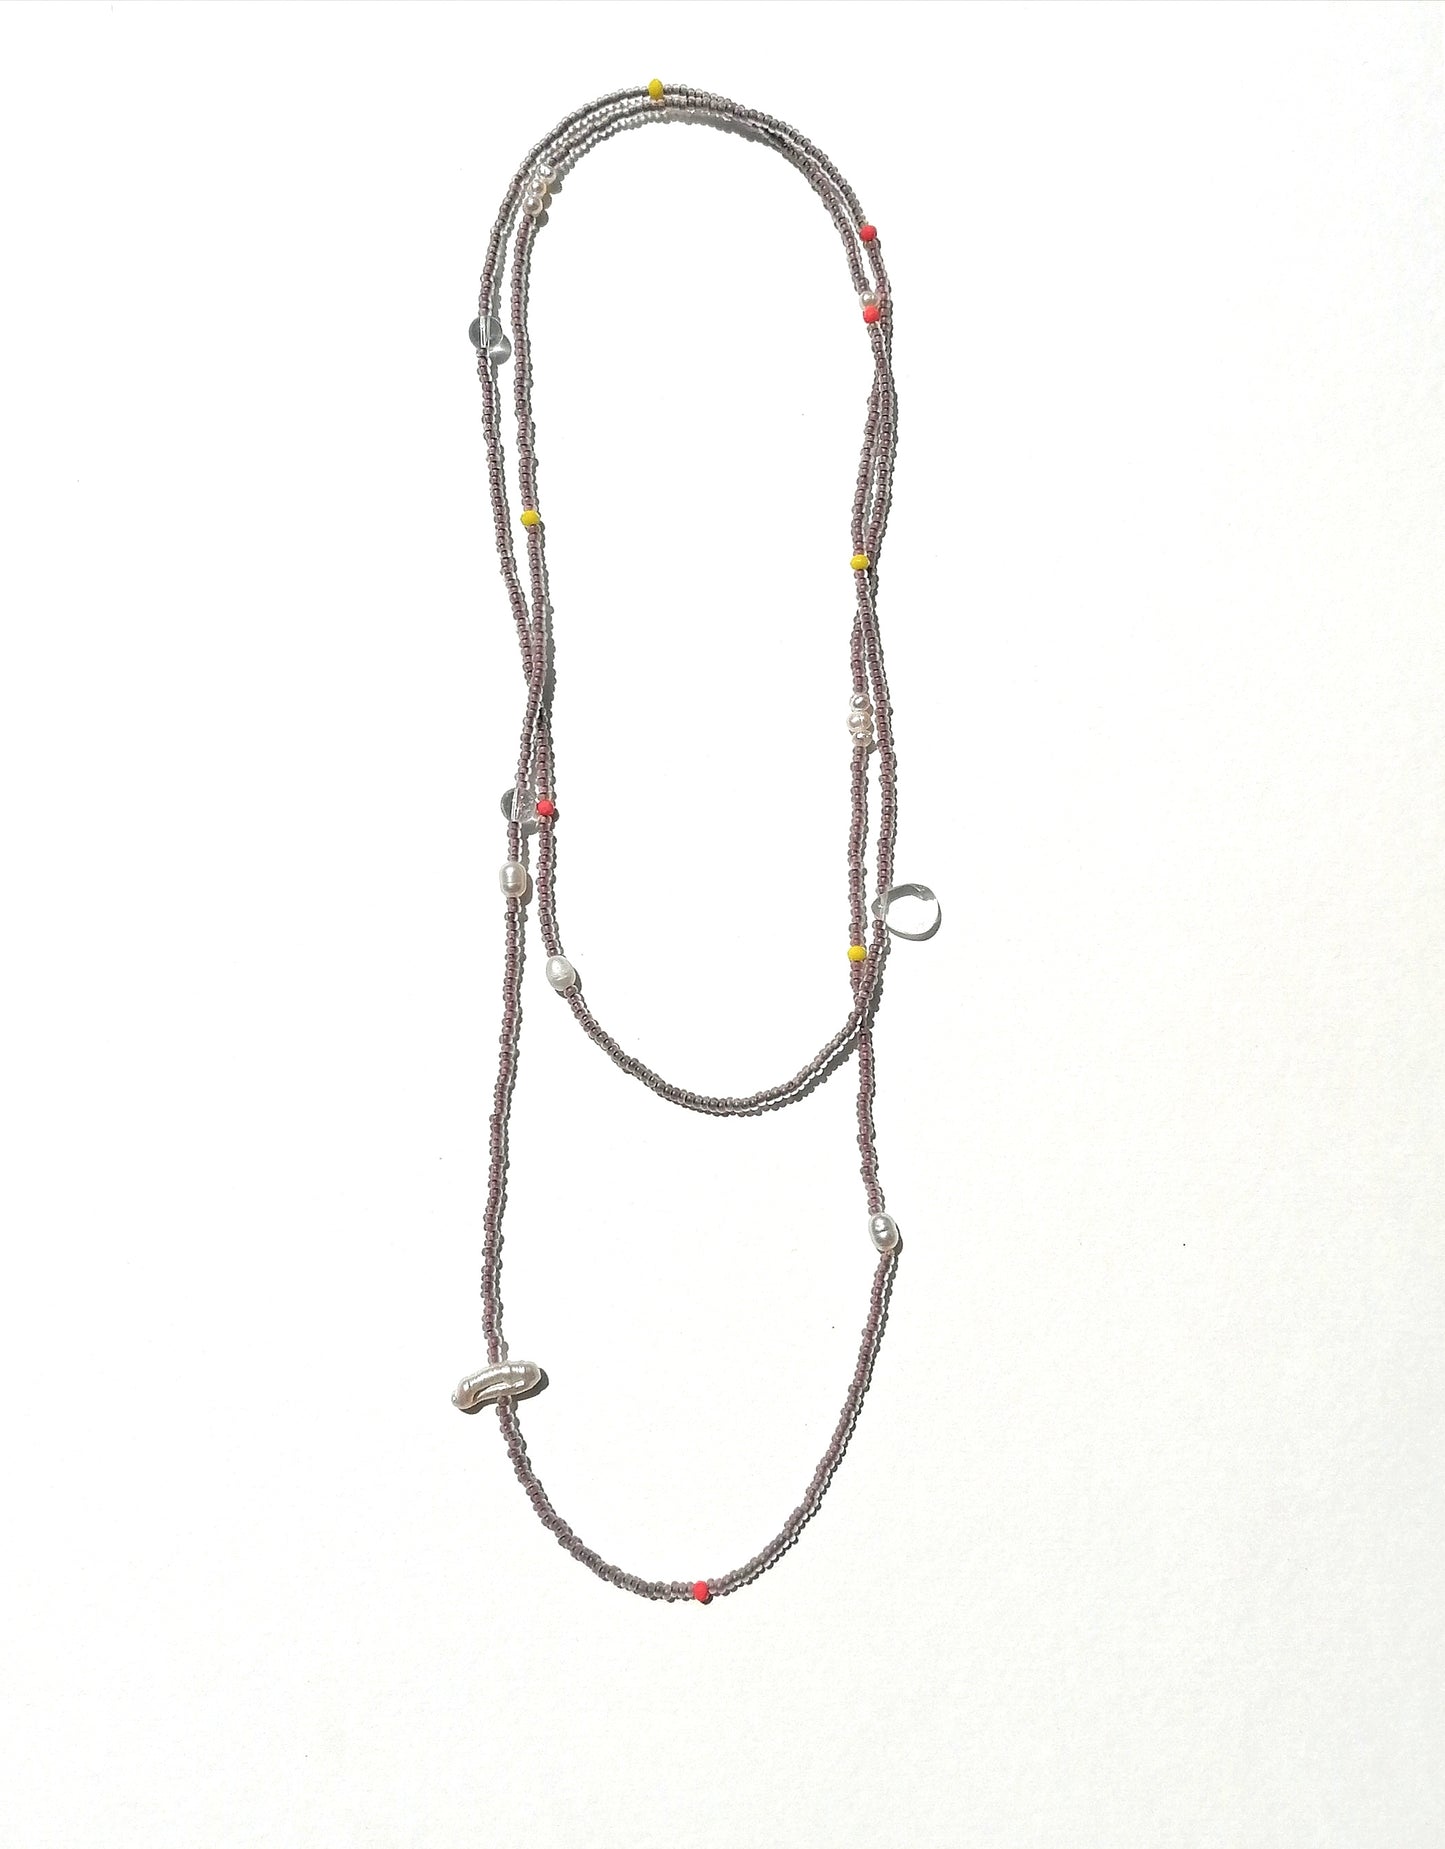 Lange Kette mit Perlen | matt braun weiß neon | Infinity Halskette